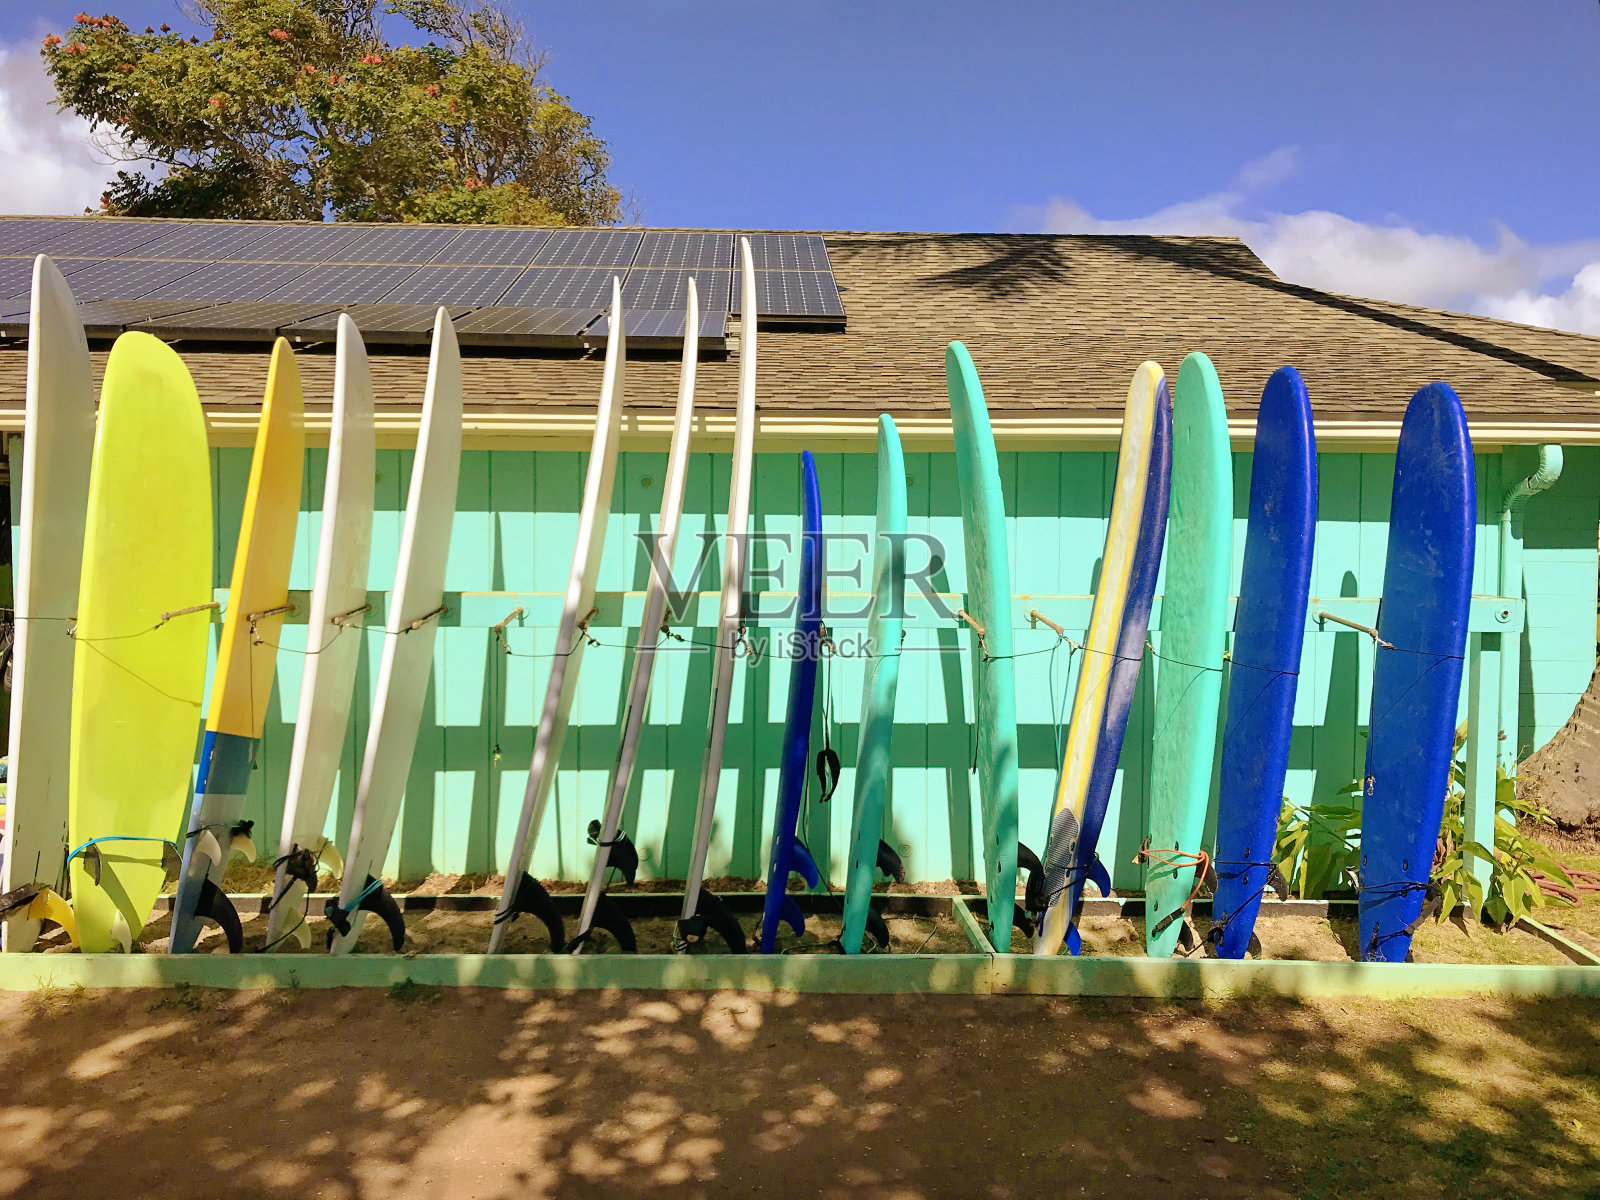 冲浪板陈列在夏威夷考艾岛海滩的运动器材租赁店照片摄影图片